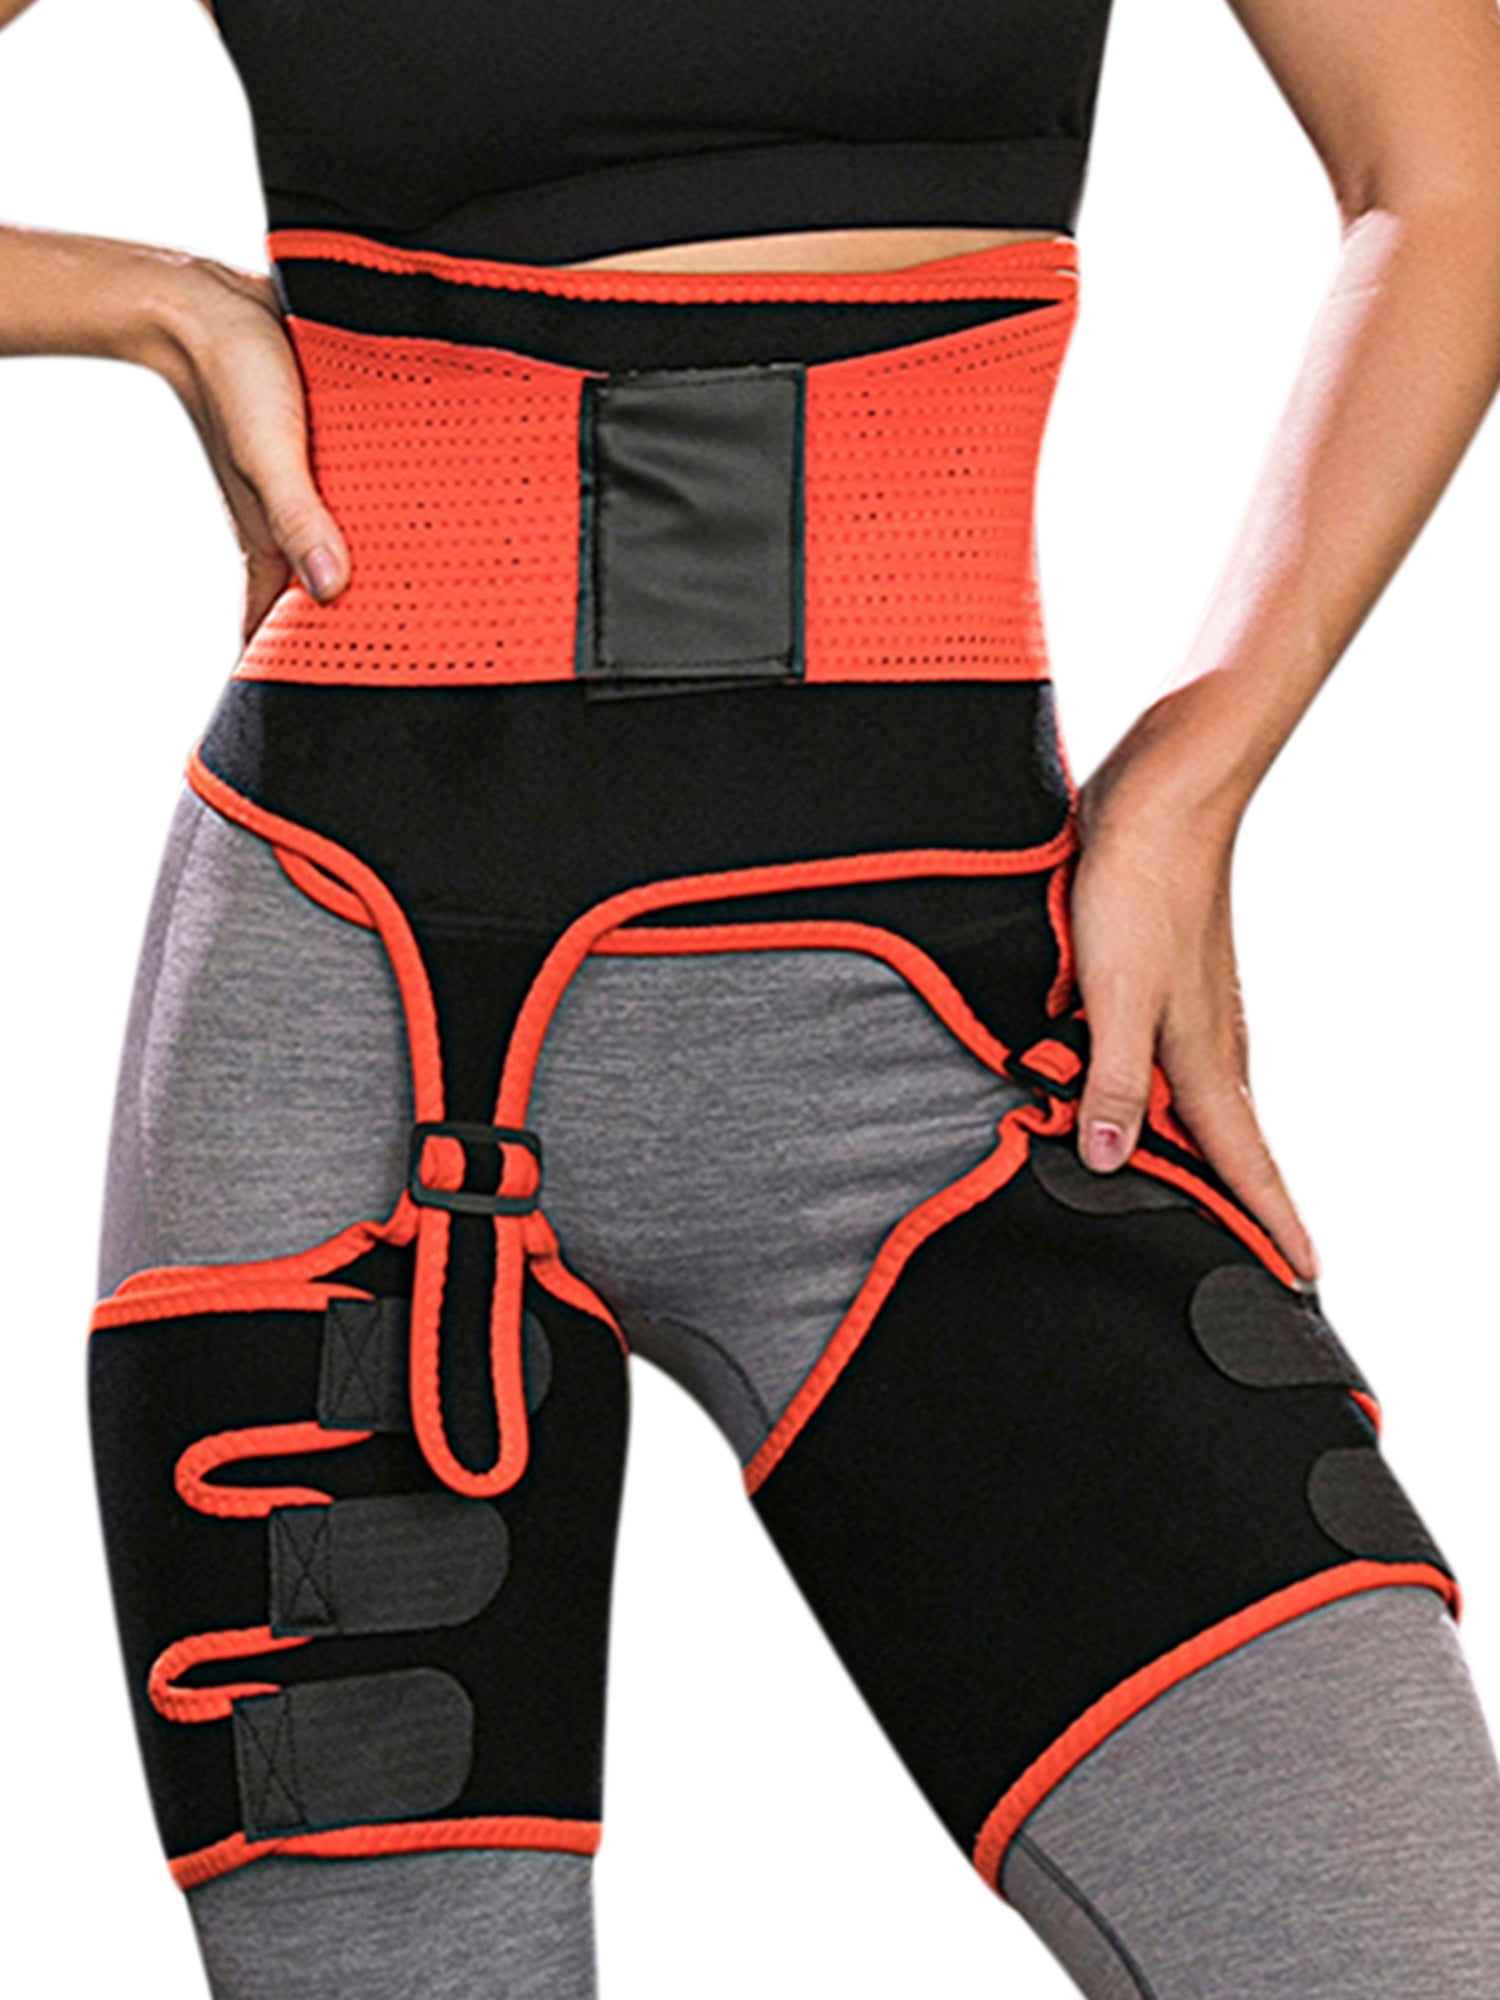 LUMENAIR 3 in 1 Adjustable Hip Enhancer Waist Trainer Butt Lifter Sport Shaper and Hips Belt High Waist Trimmers Thigh Trimmers for Women Body Shaper Waist Trainer Belt